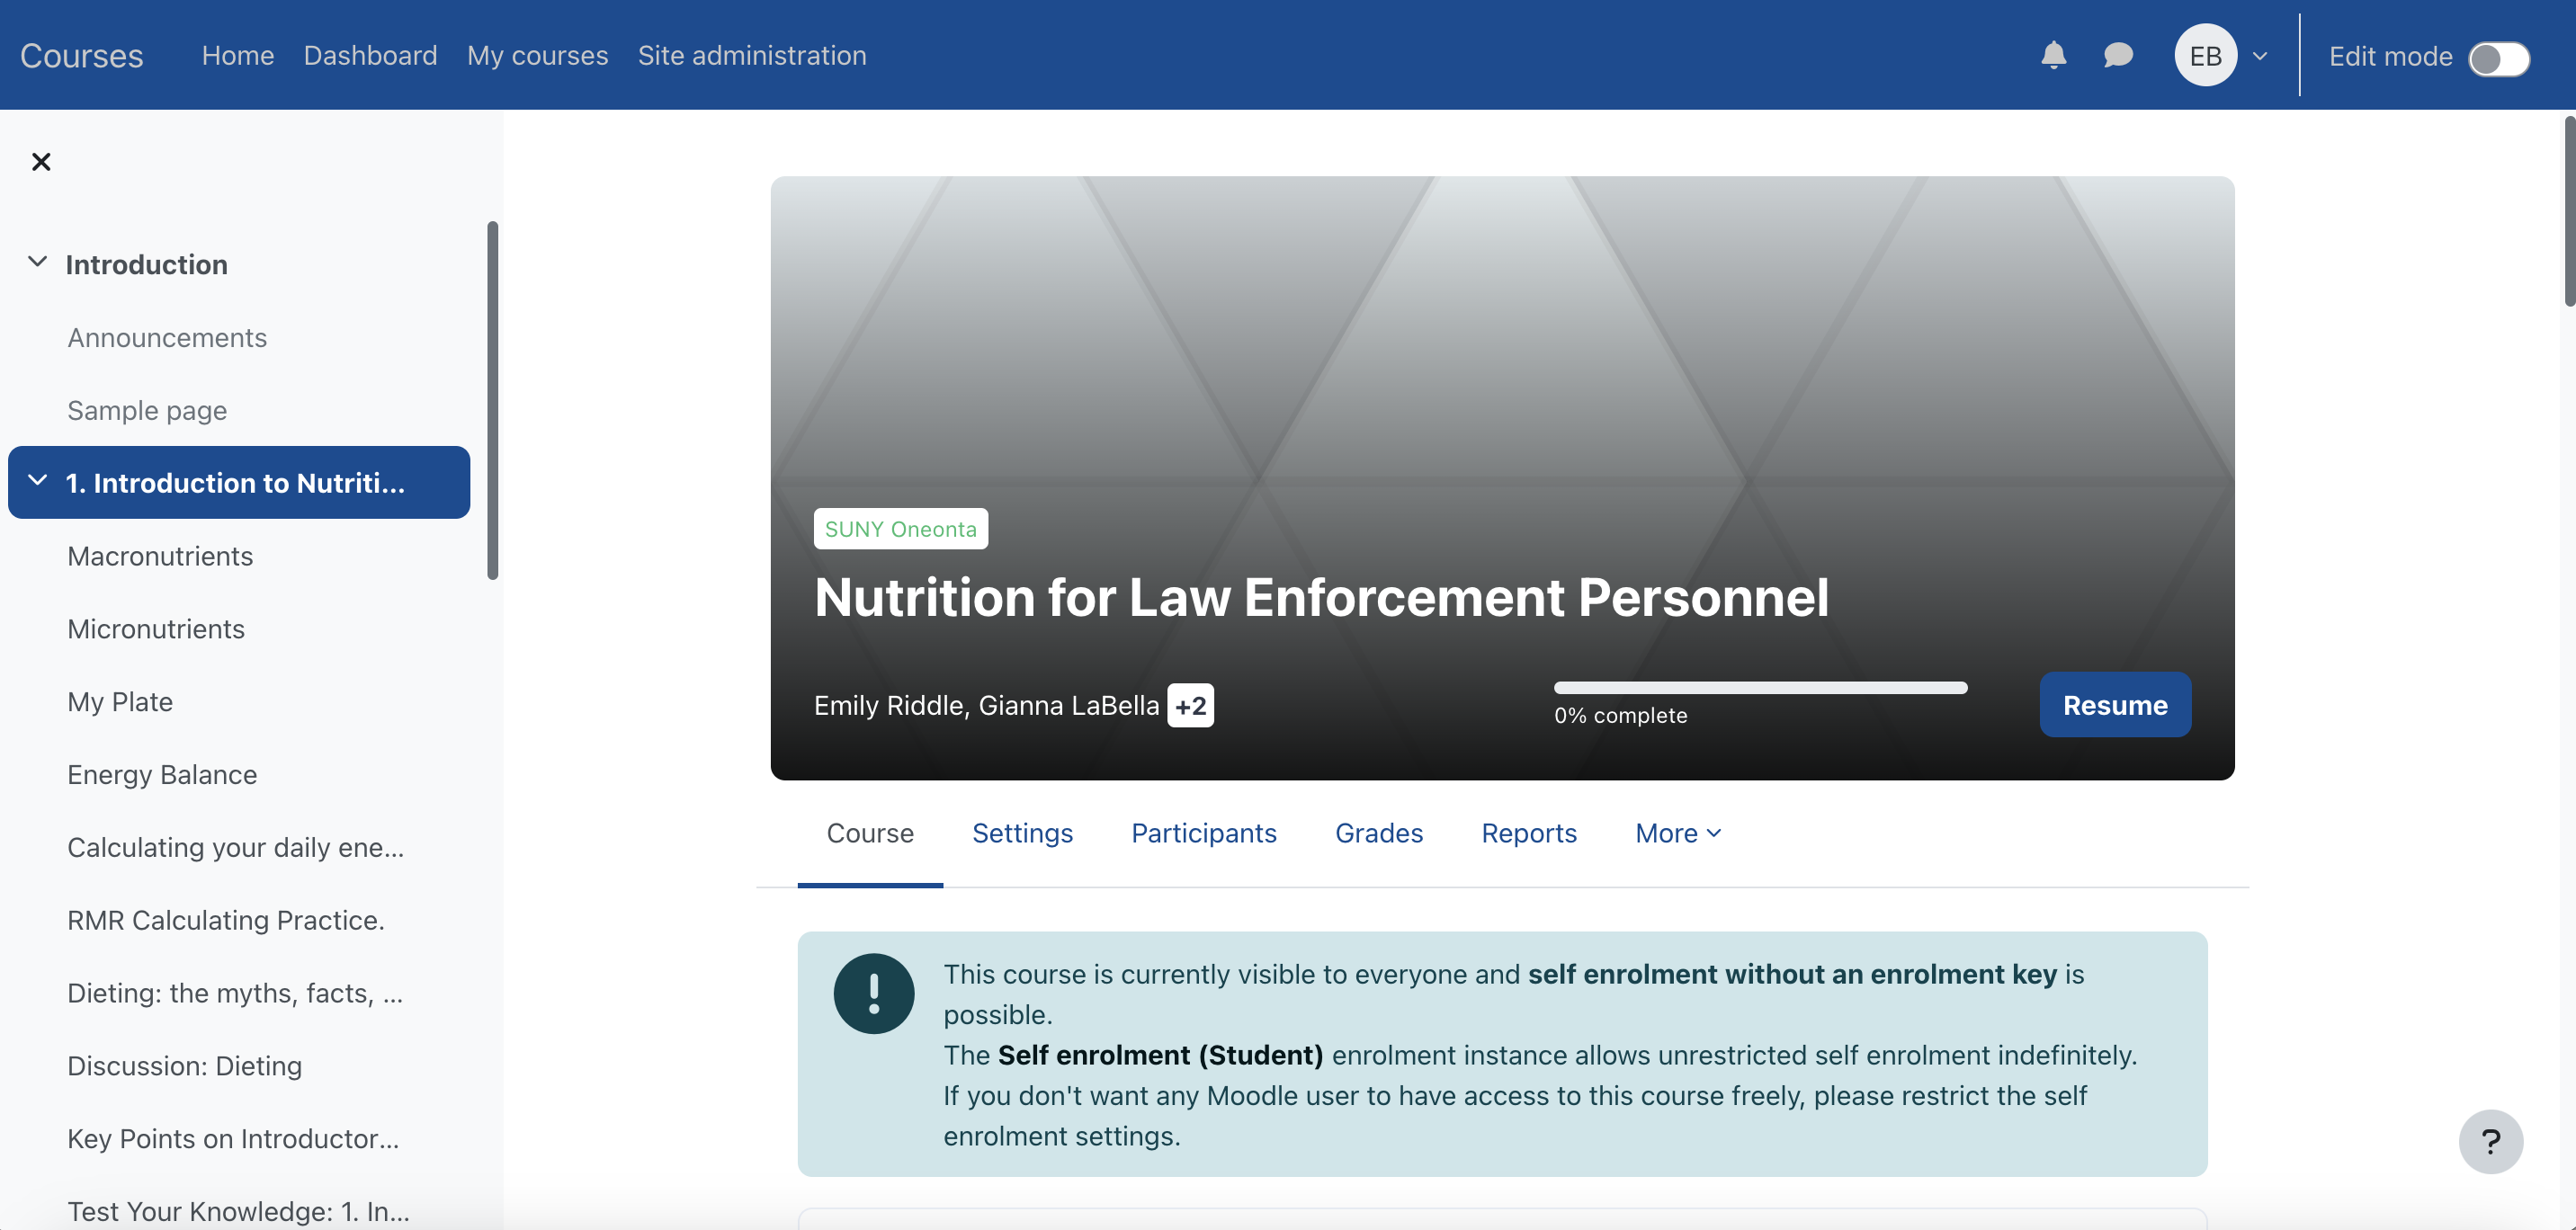 Nutrition for Law Enforcement Personnel